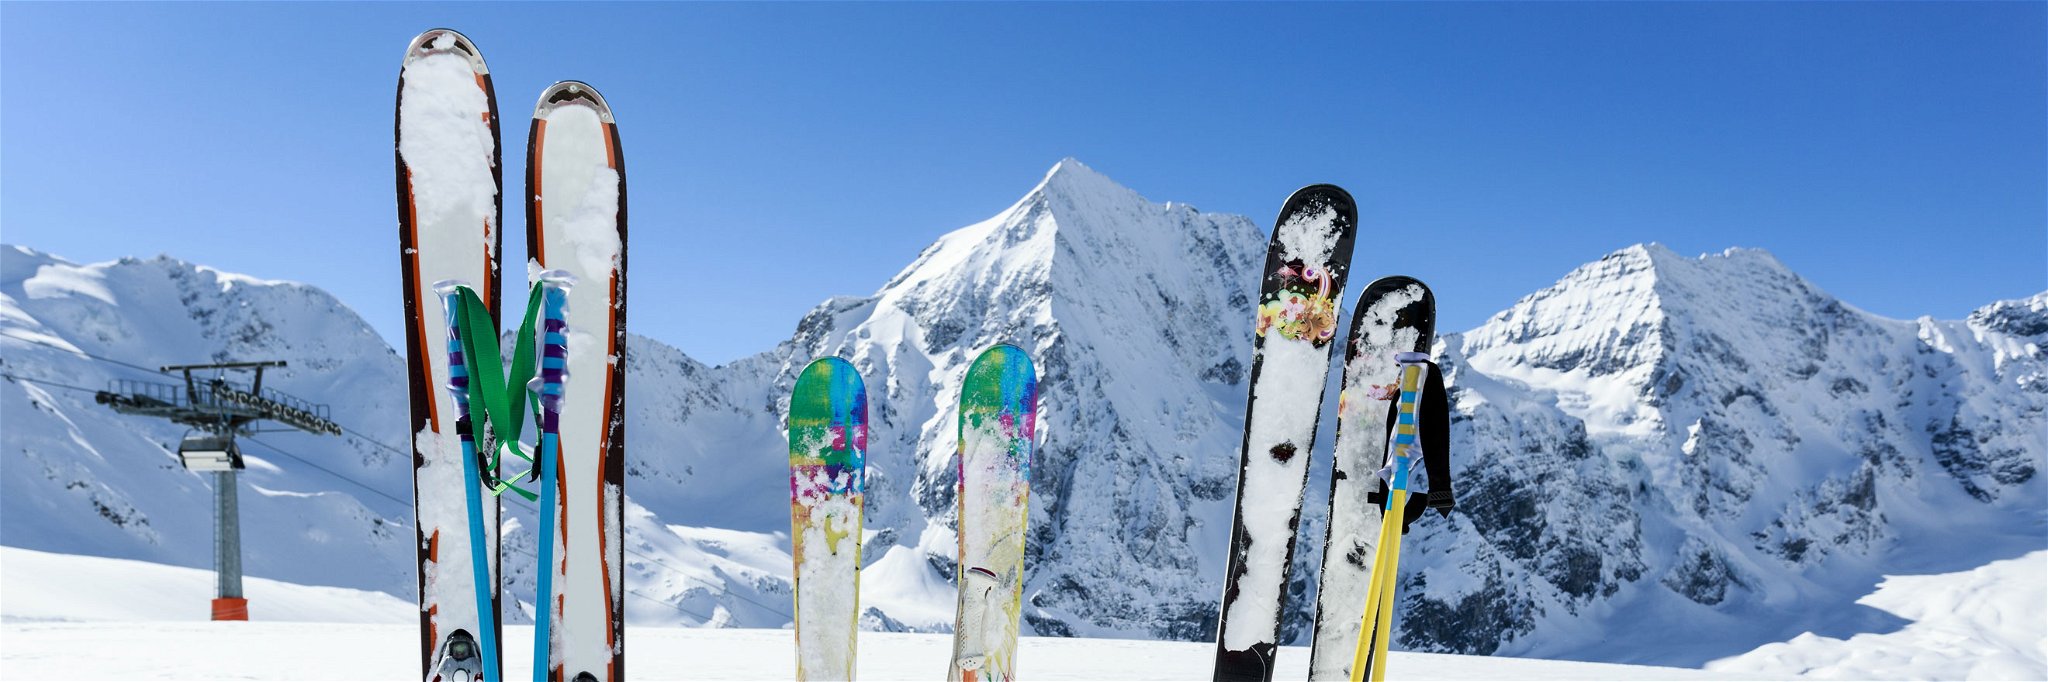 Das sind die besten Skigebiete der Welt im Ranking.